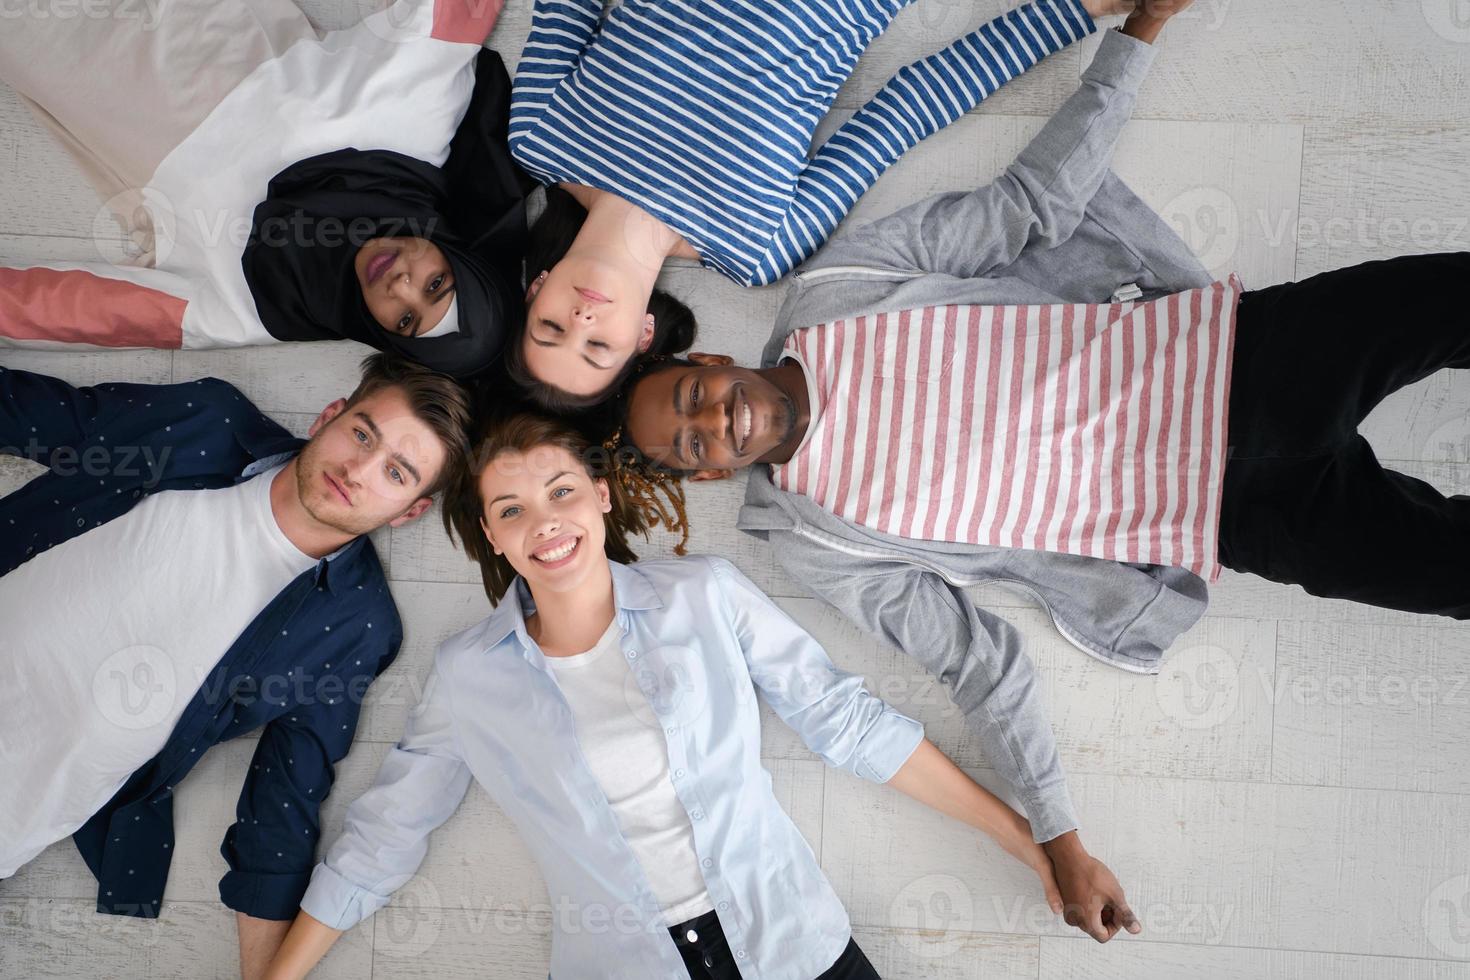 vue de dessus d'un groupe diversifié de personnes allongées sur le sol et symbolisant l'unité photo